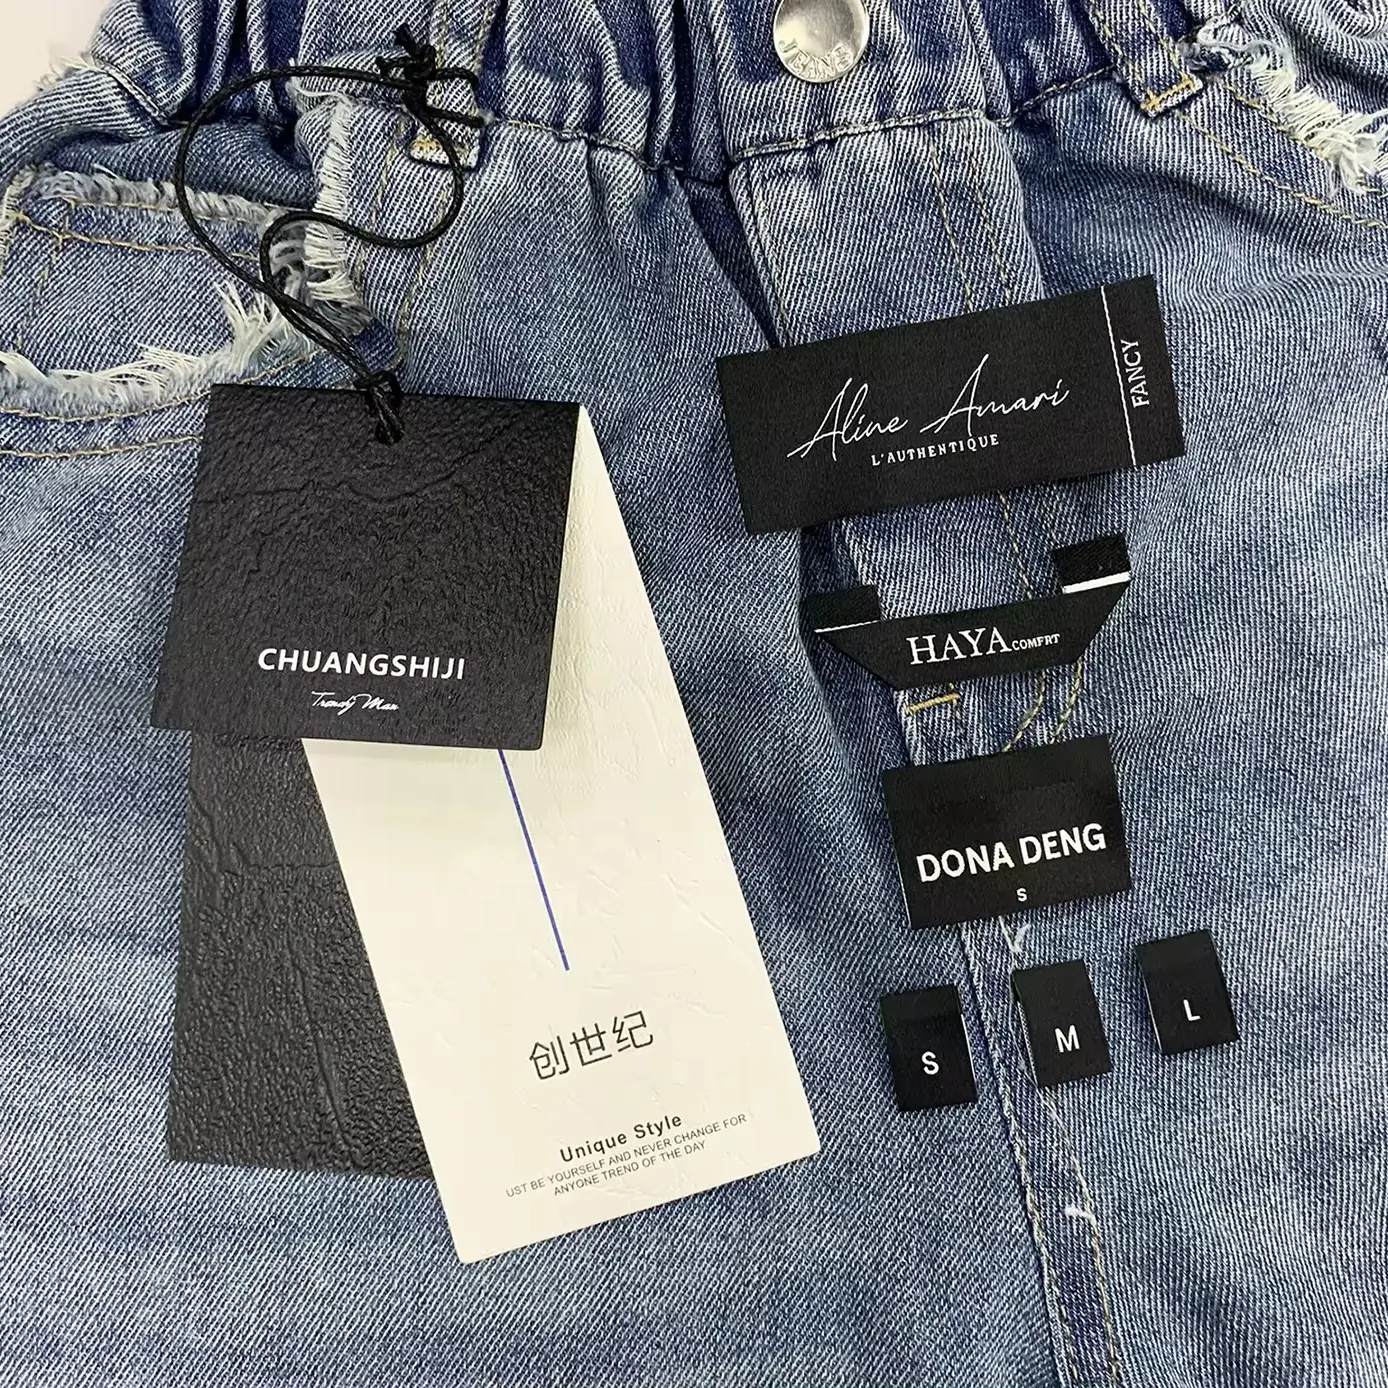 Etiqueta de papel para pendurar roupas, etiqueta Hangtag em papel para roupas, etiqueta de luxo personalizada para jeans, etiquetas penduradas para roupas